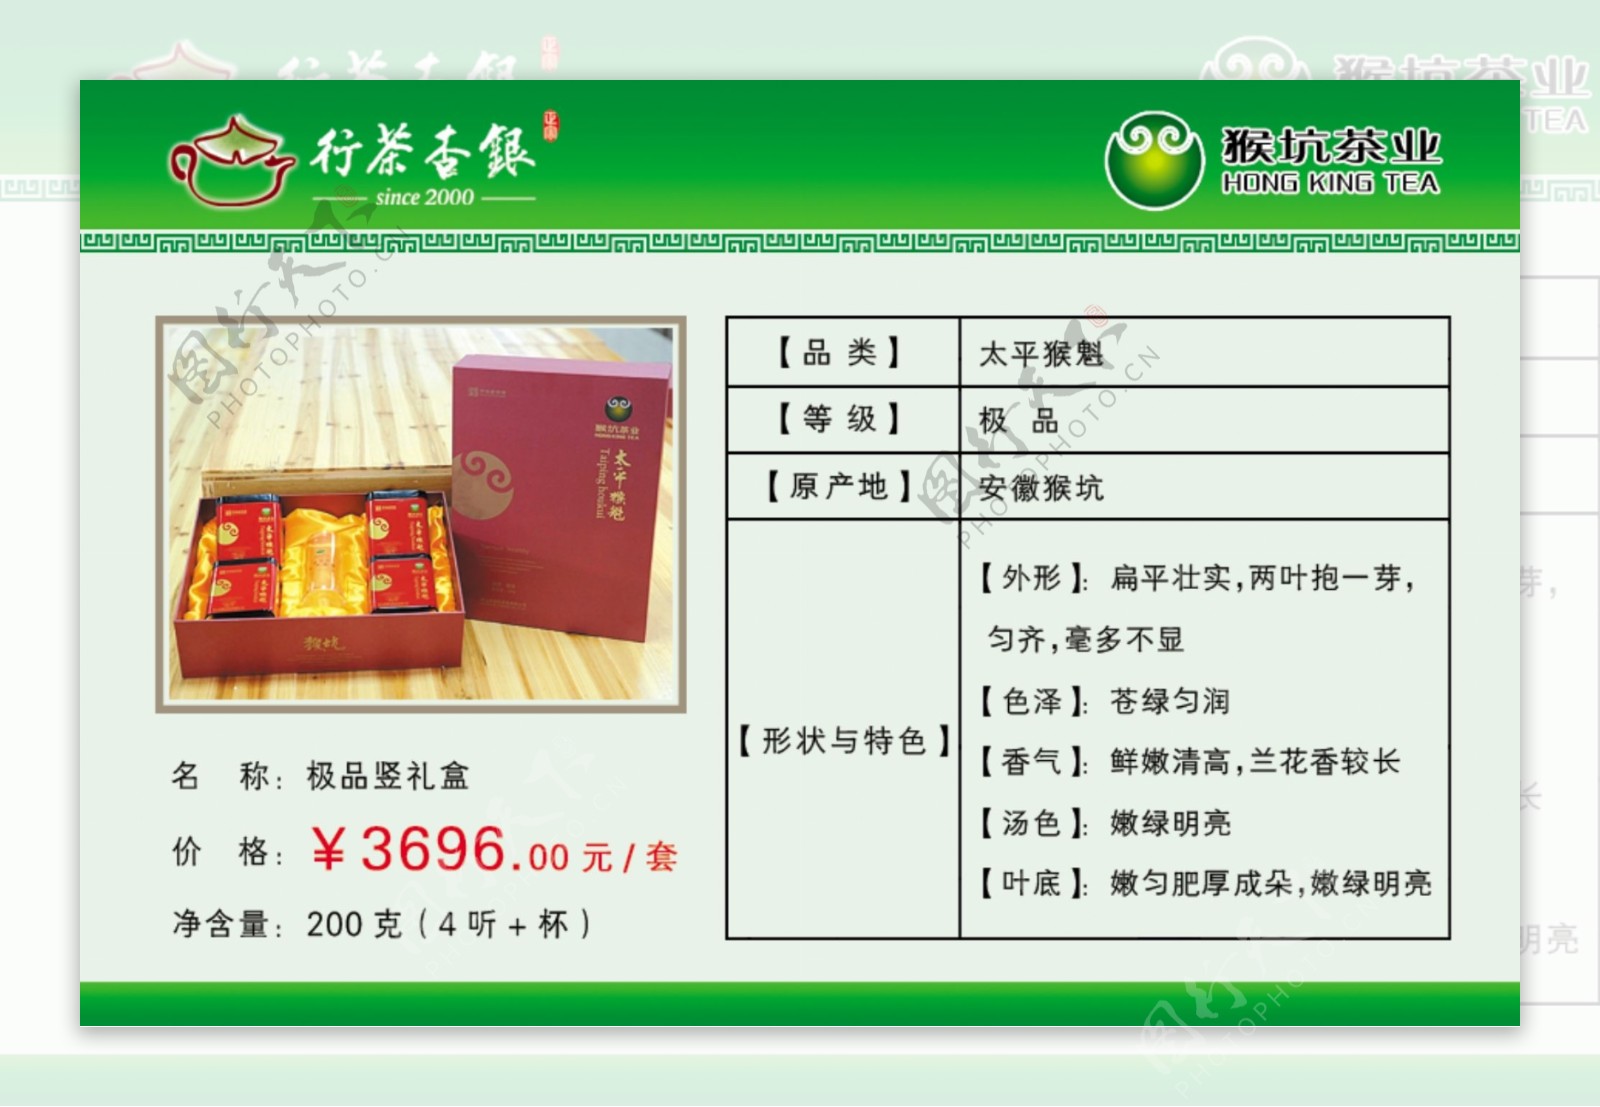 猴坑牌太平猴魁产品价格标签图片